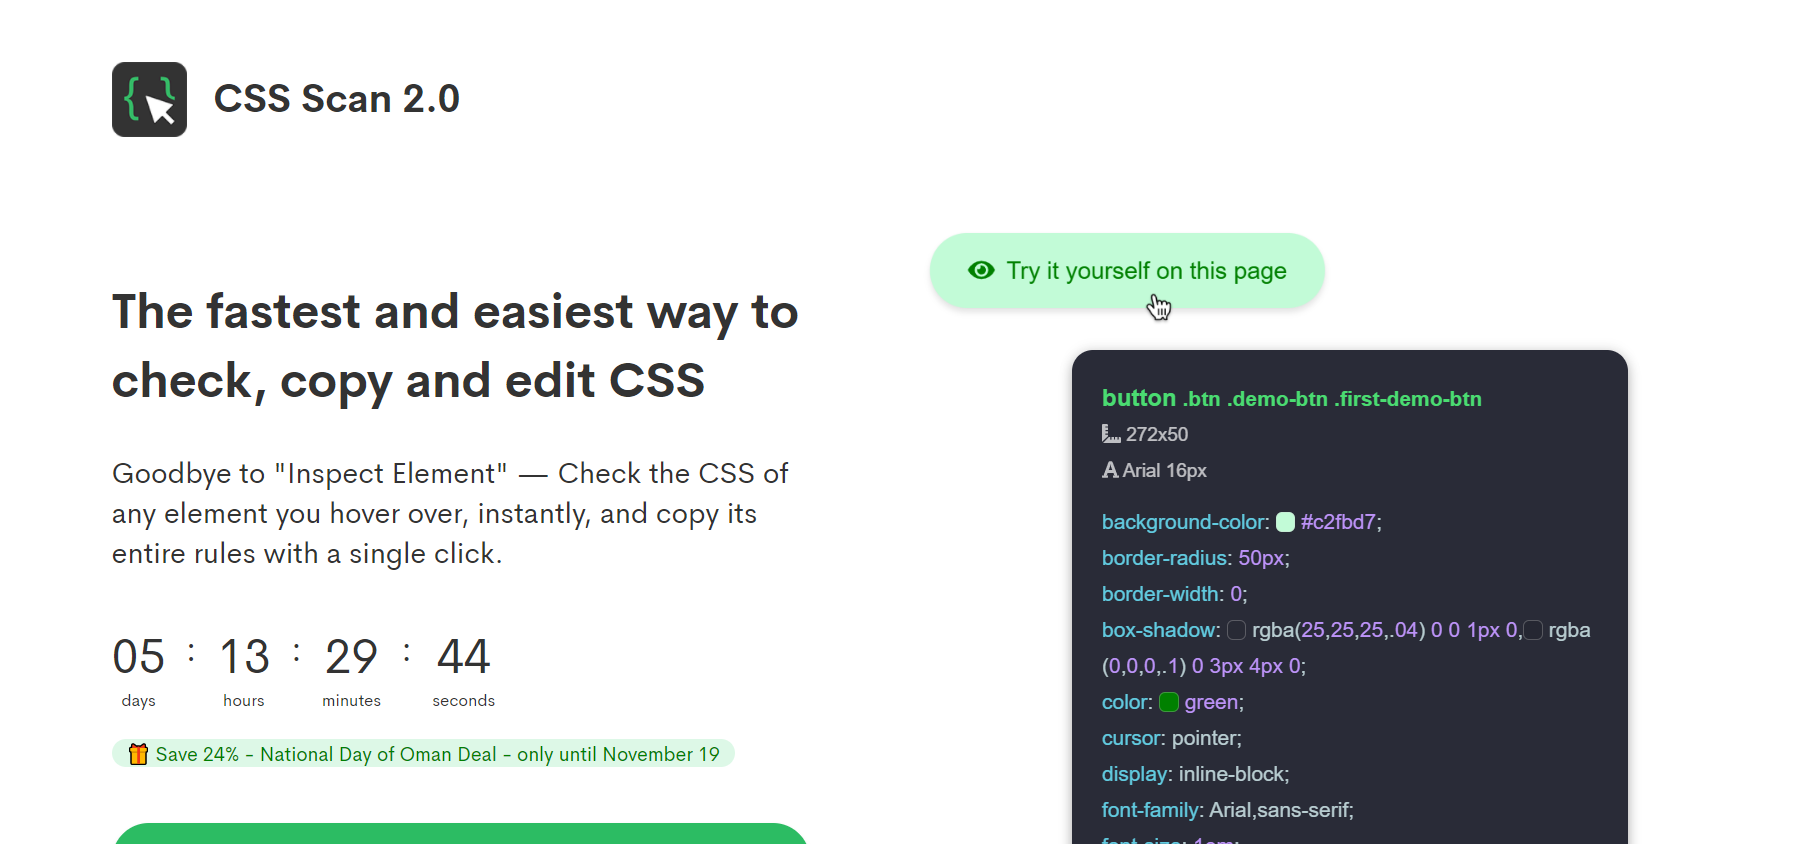 CSS Scan 2.0 быстрый и простой способ проверить, скопировать и отредактировать CSS